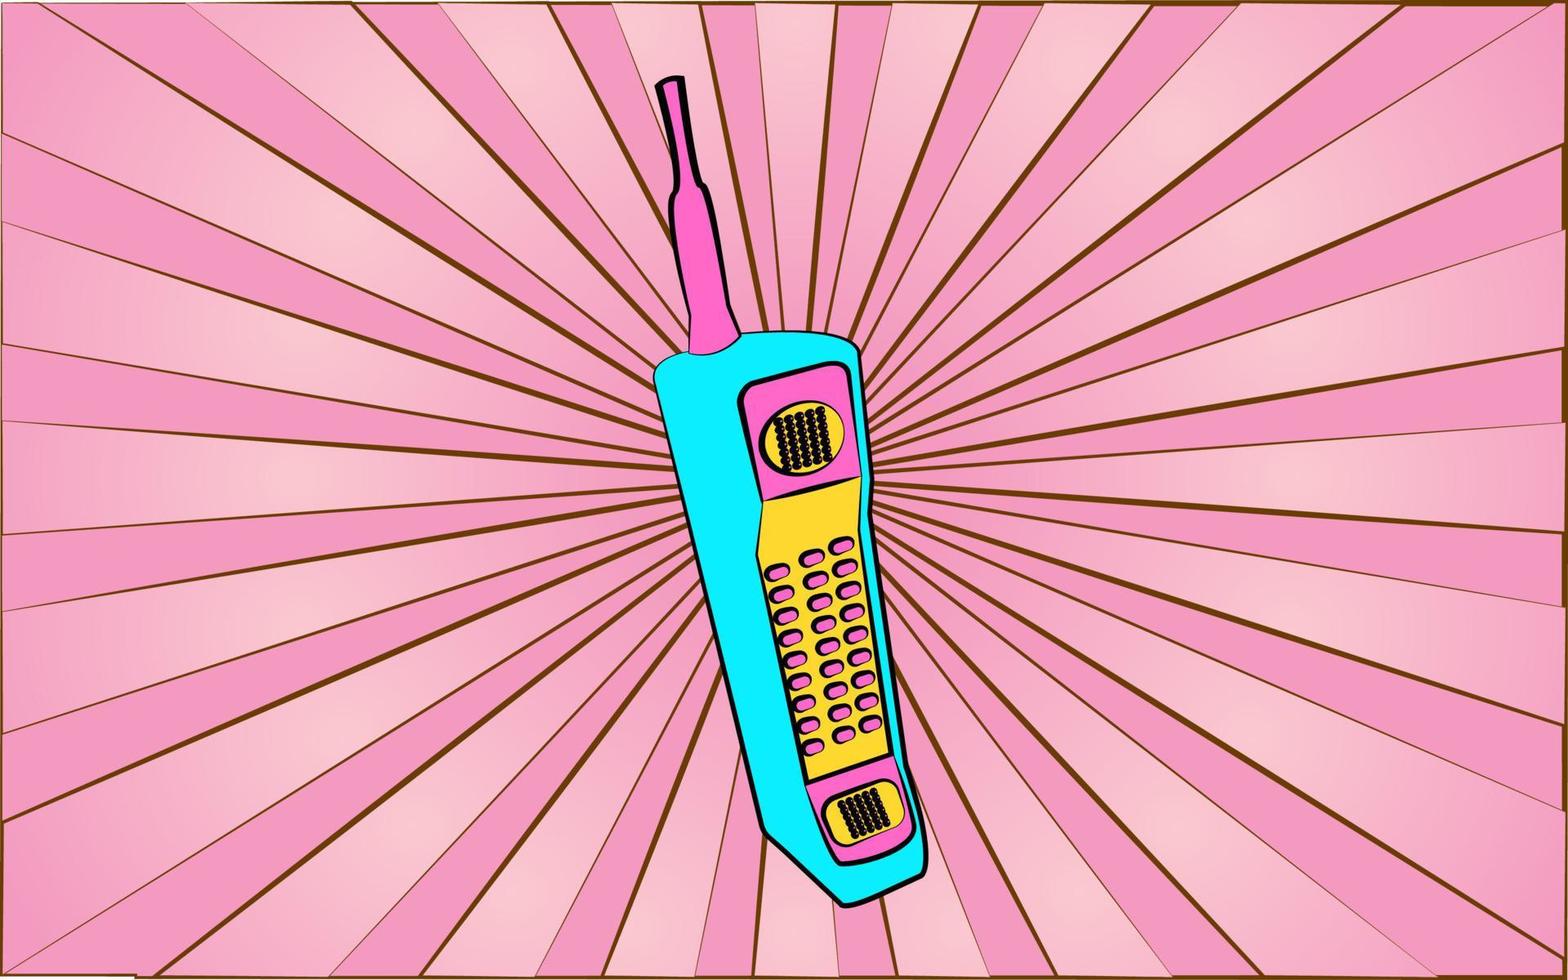 teléfono móvil retro antiguo hipster de los años 70, 80, 90, 2000 contra un fondo de rayos rosados abstractos. ilustración vectorial vector